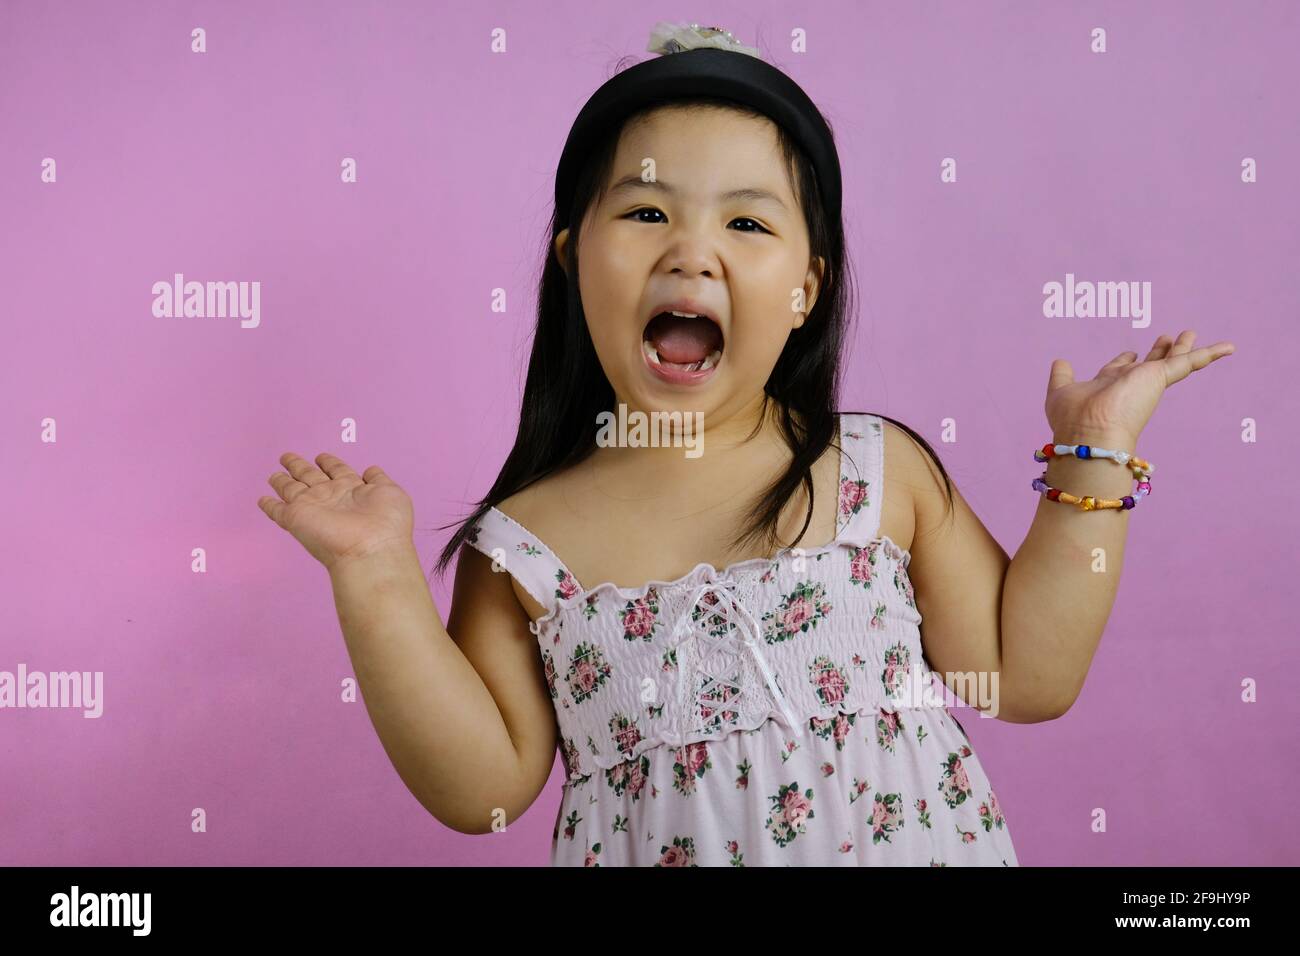 Une jolie jeune fille asiatique chubby se sentant excitée, hurlant, avec sa bouche large ouverte et ses mains levées, avec fond rose. Banque D'Images